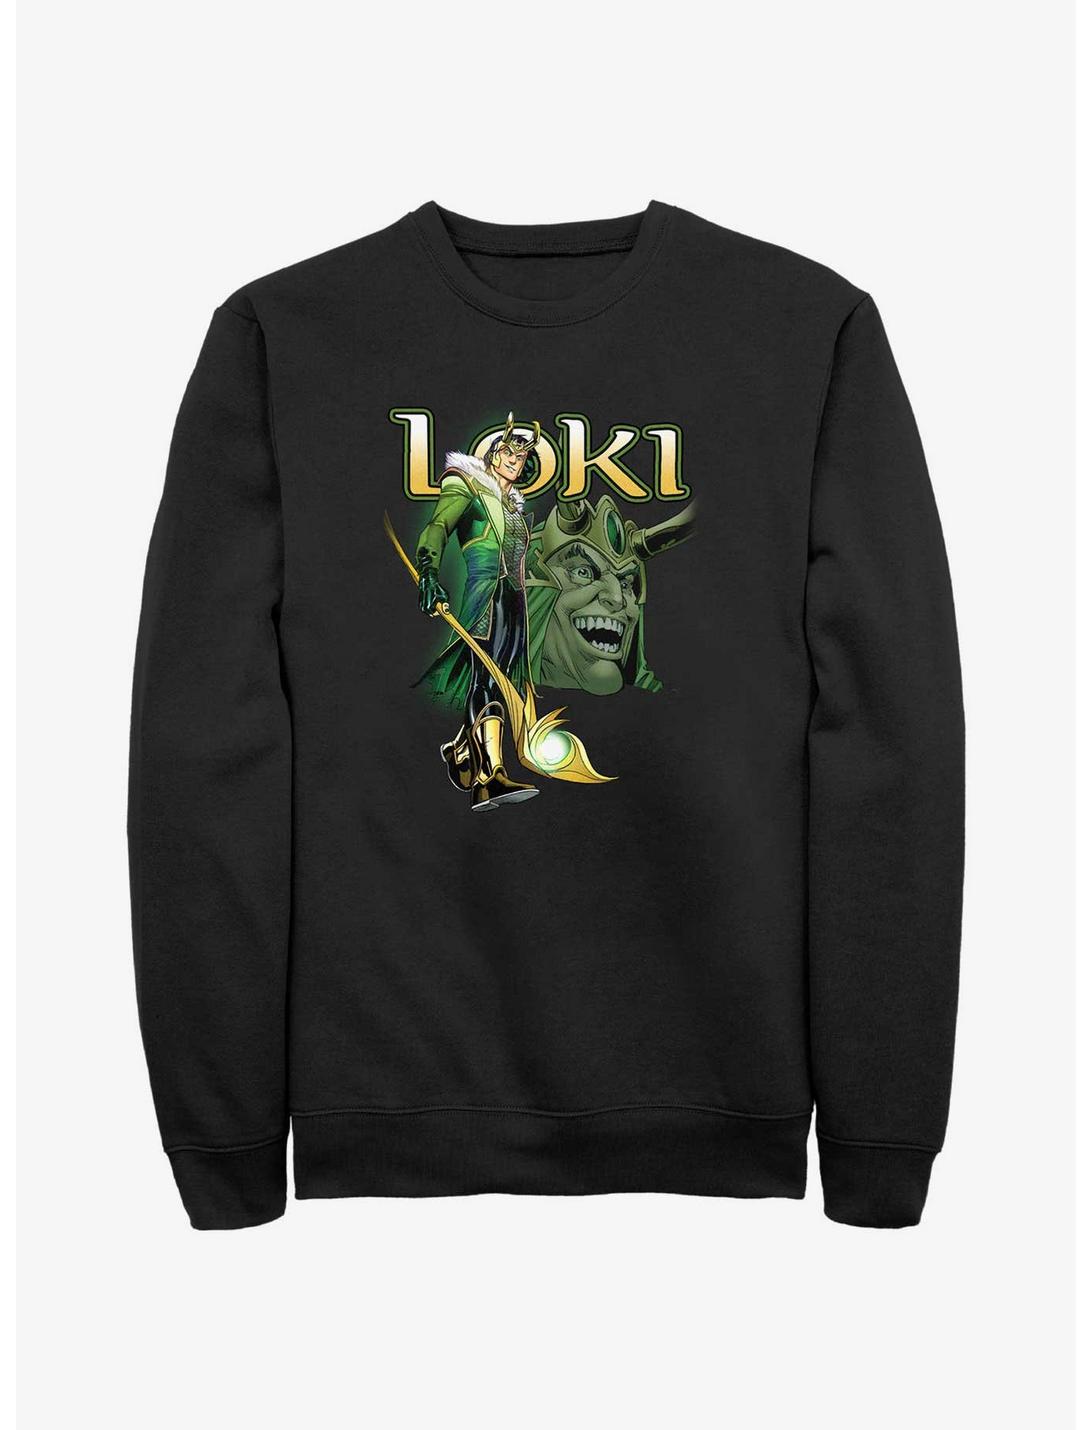 Marvel Loki Mischievous Grin Sweatshirt, BLACK, hi-res